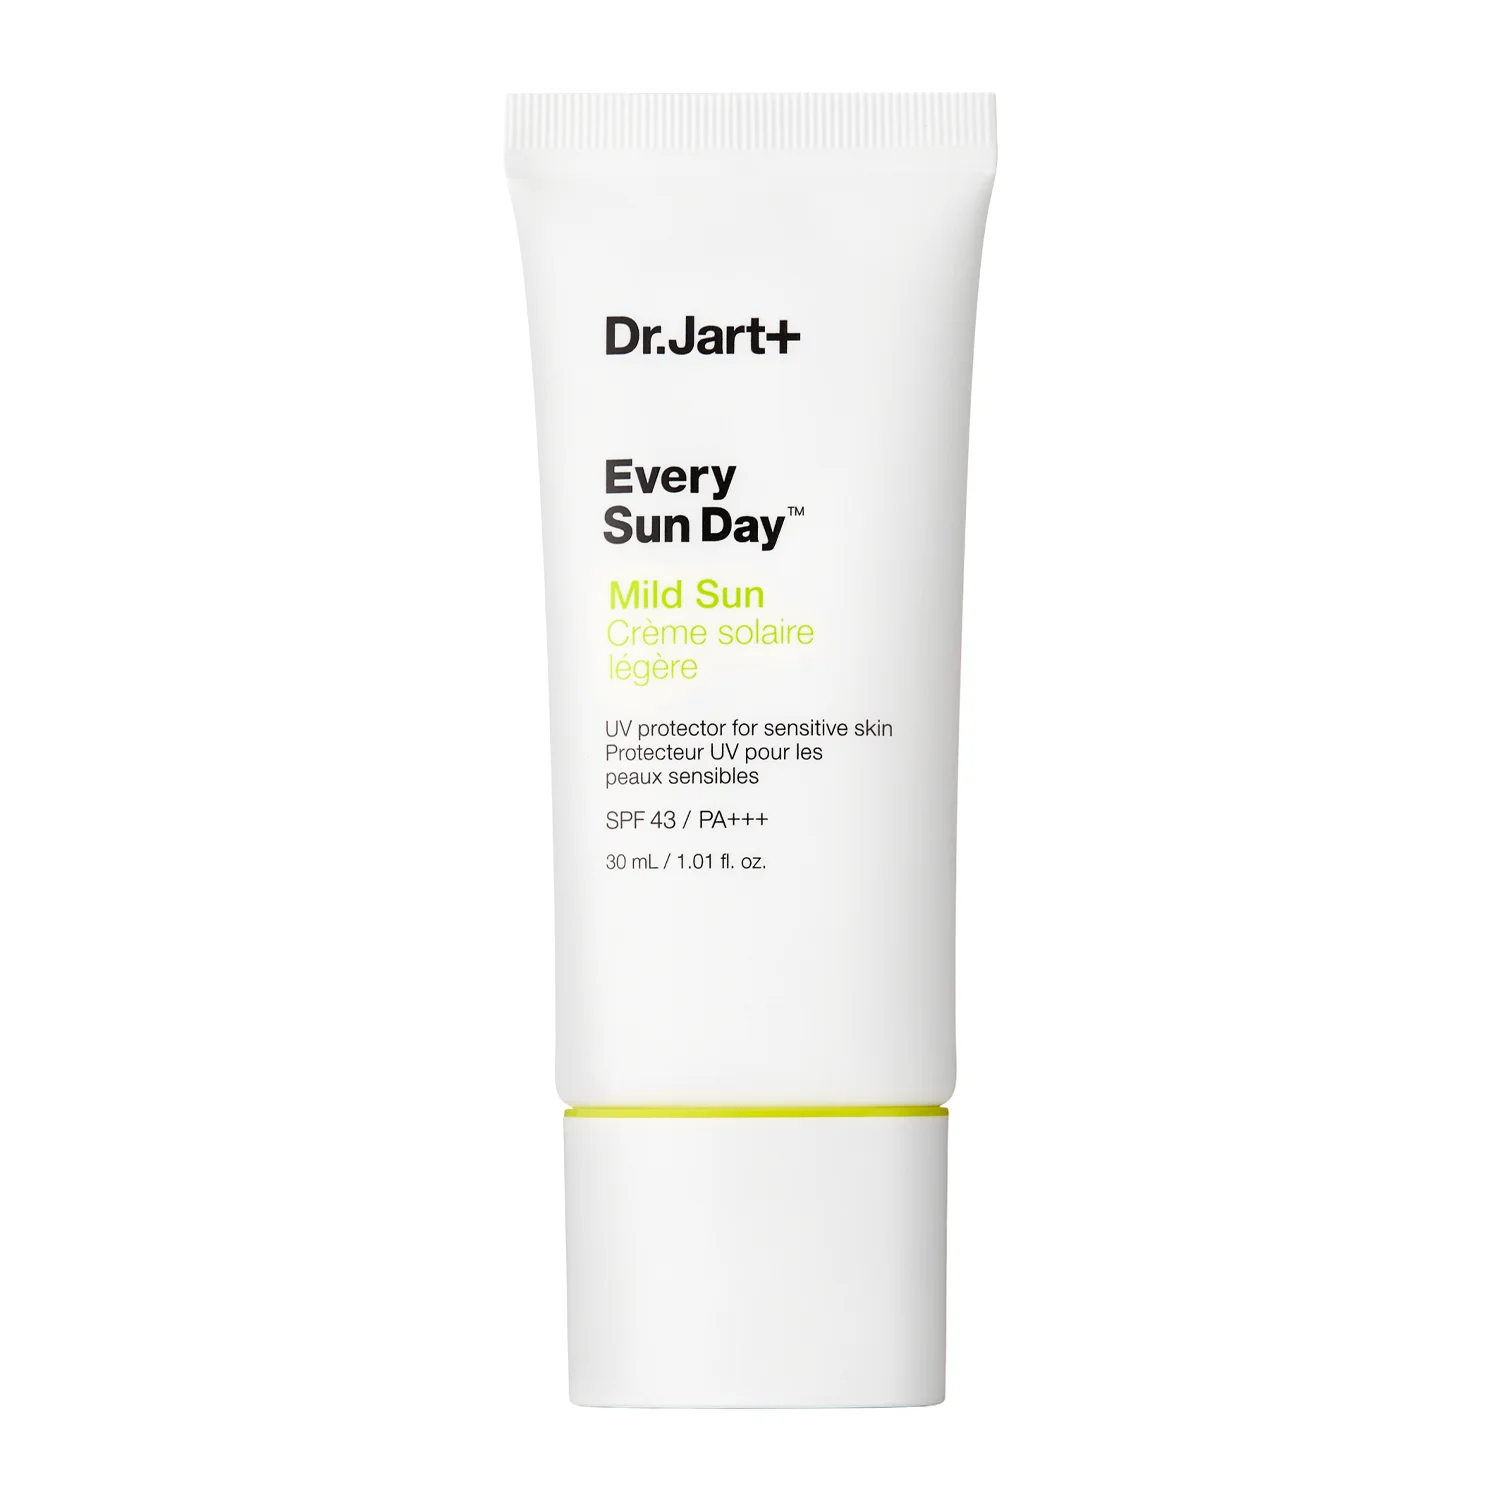 Dr.Jart+ - Every Sun Day Mild Sun SPF43/PA+++ - Daily Sunscreen - 30ml